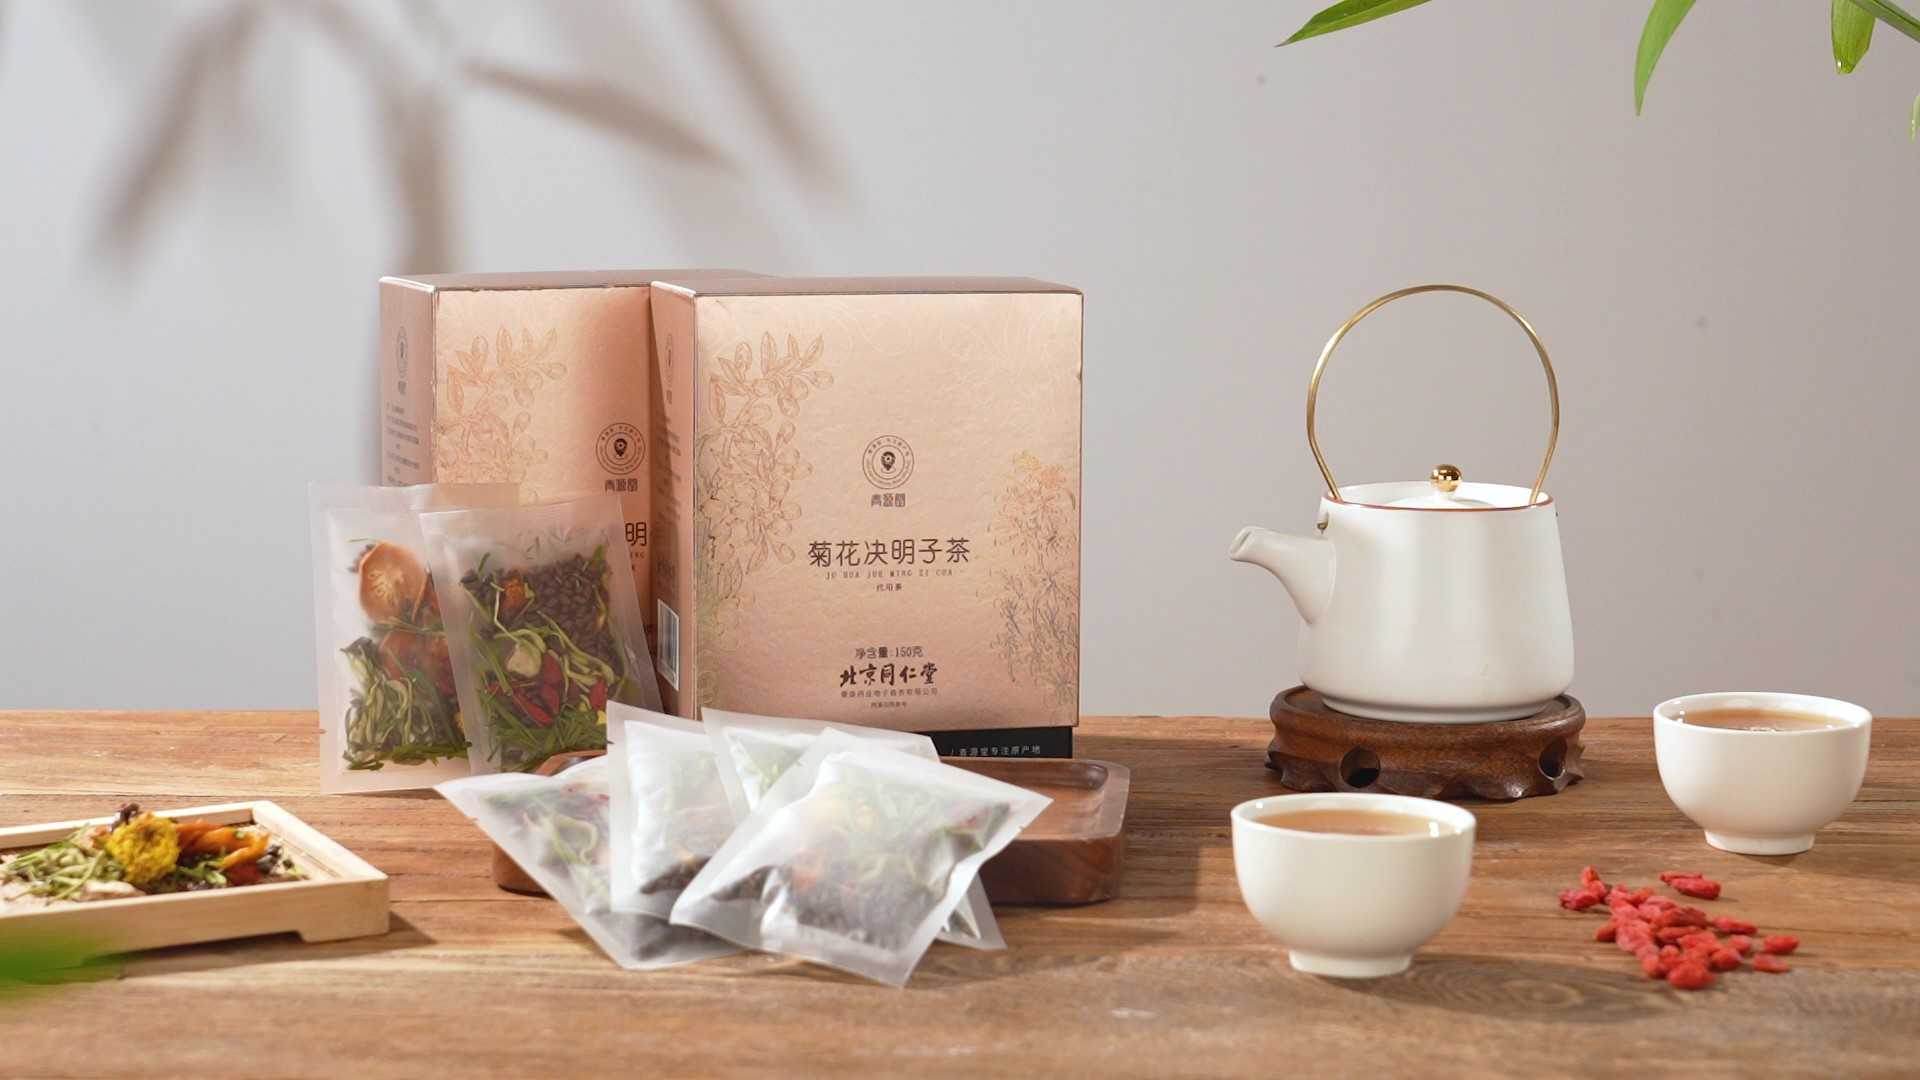 菊花决明子茶 产品拍摄 茶饮 国潮 中国风 茶叶 包装